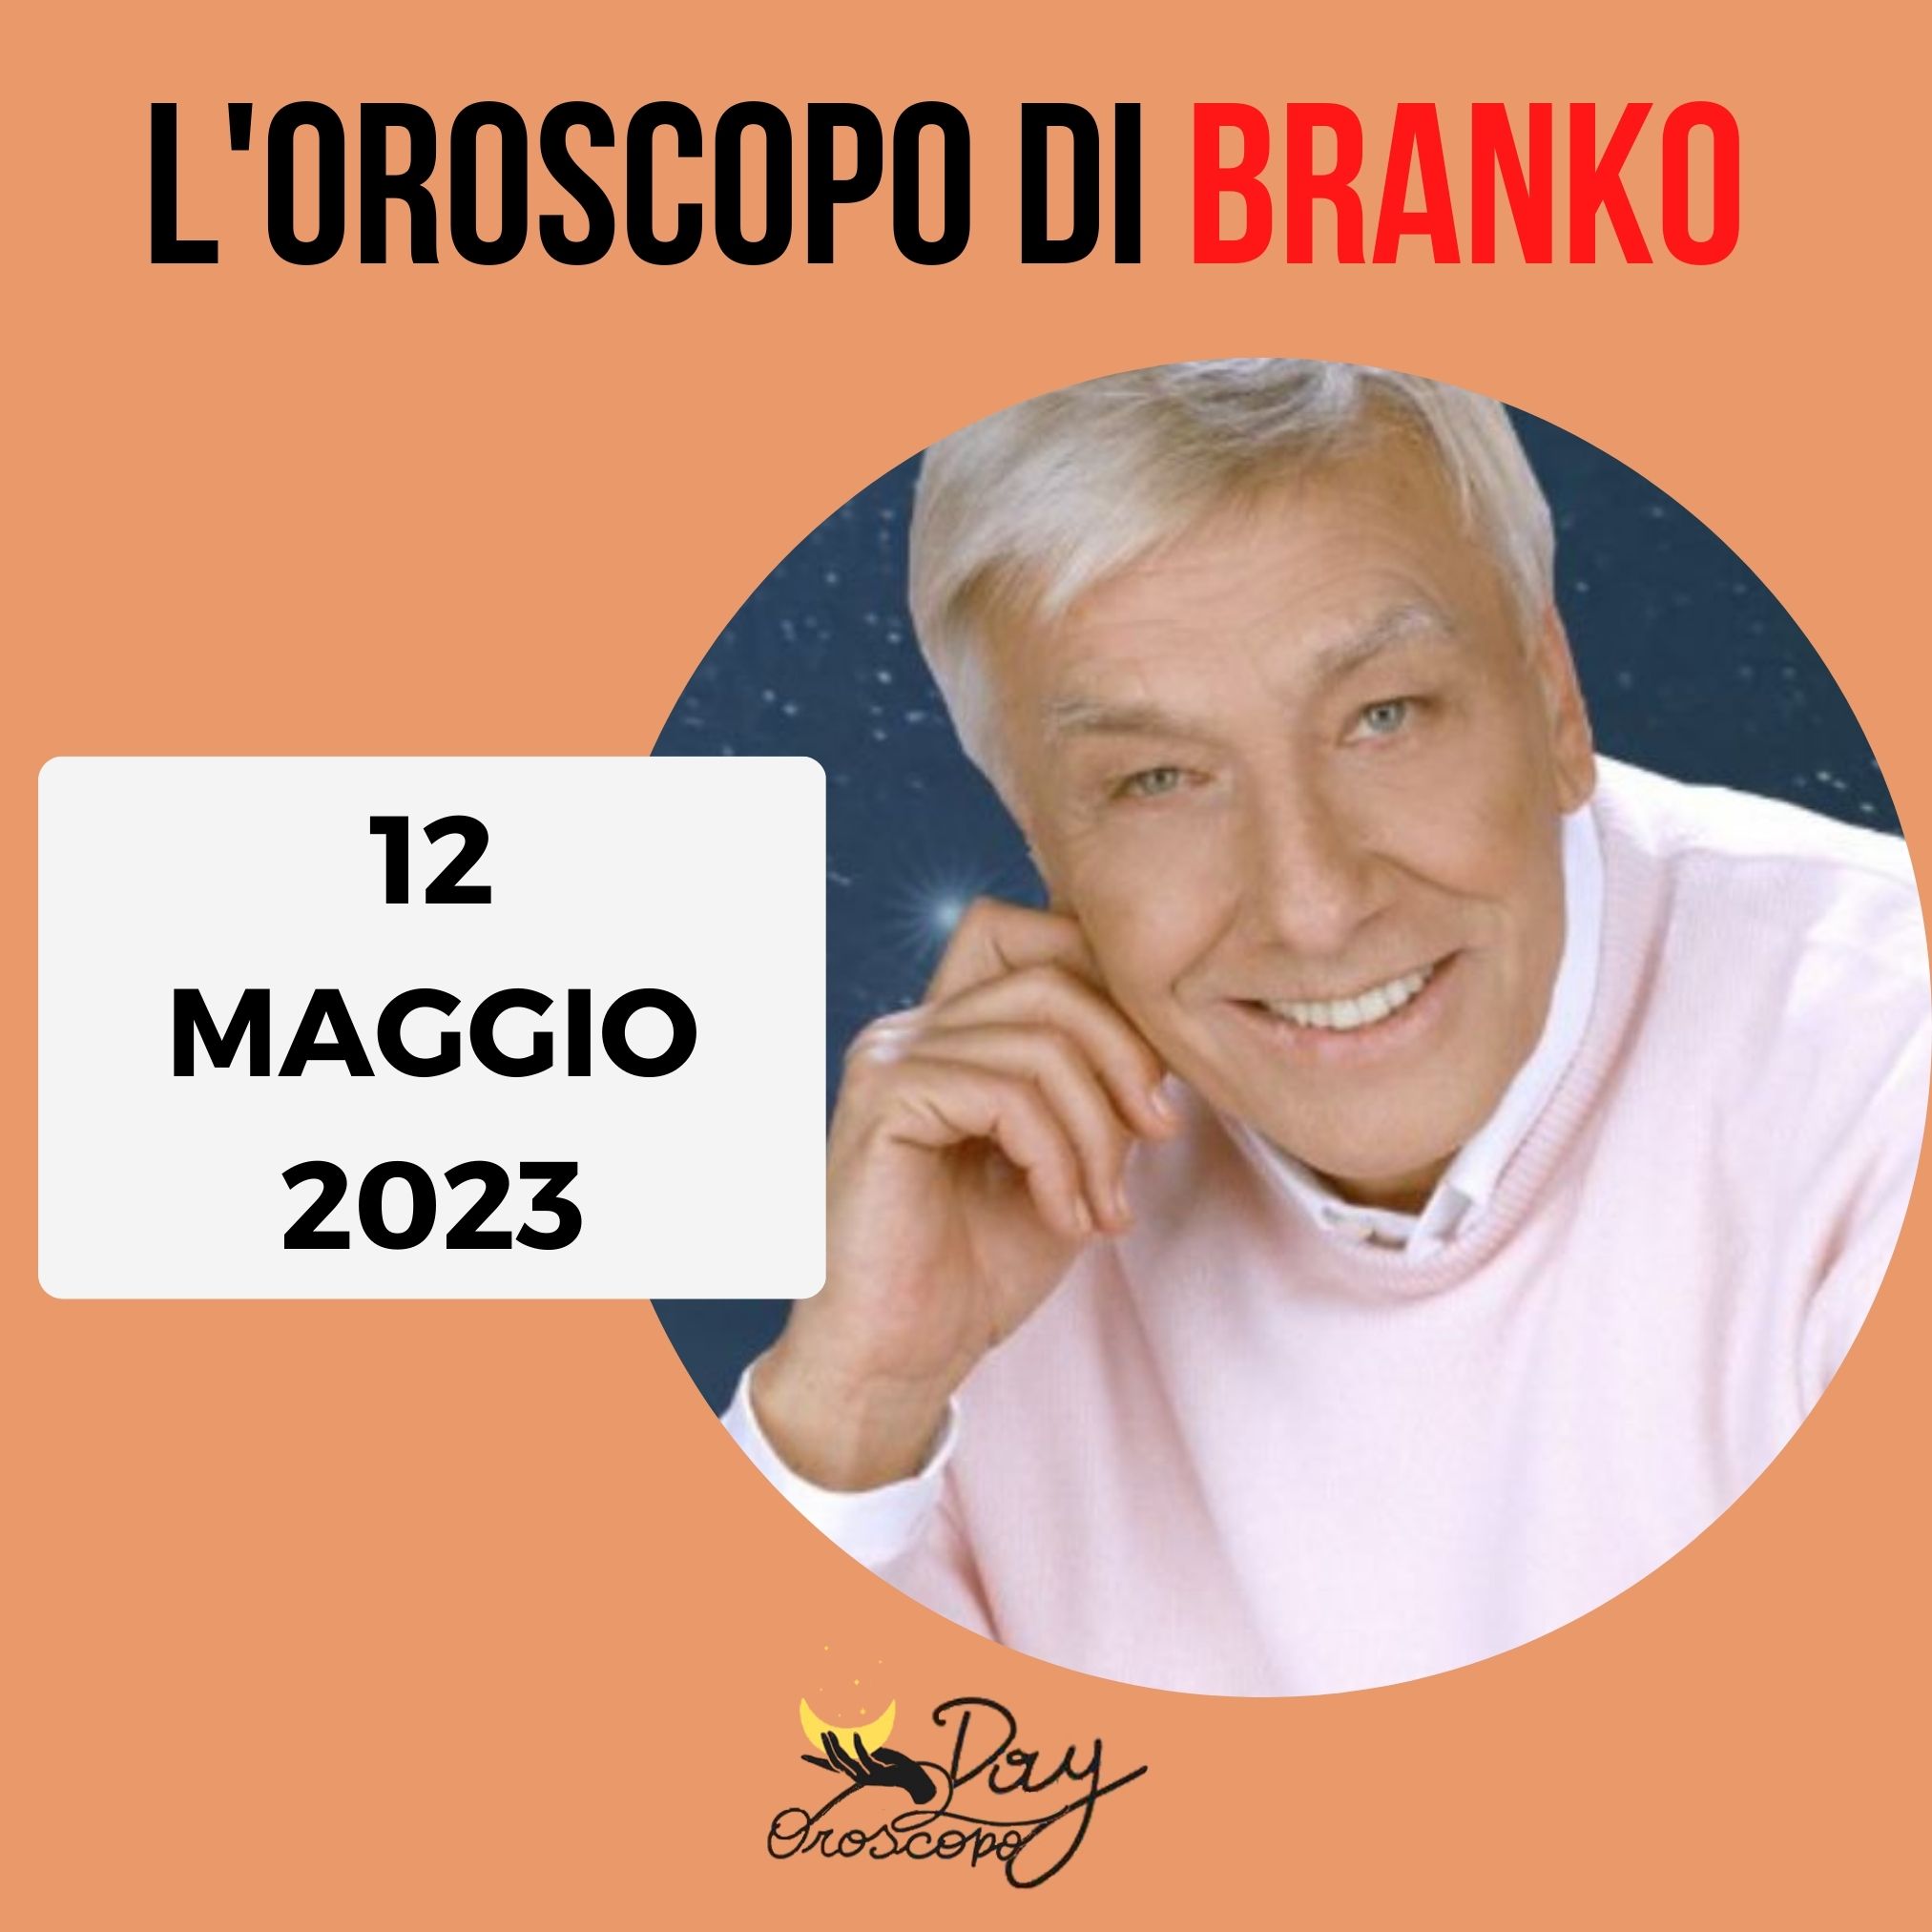 Oroscopo oggi domani Branko 12 maggio 2023